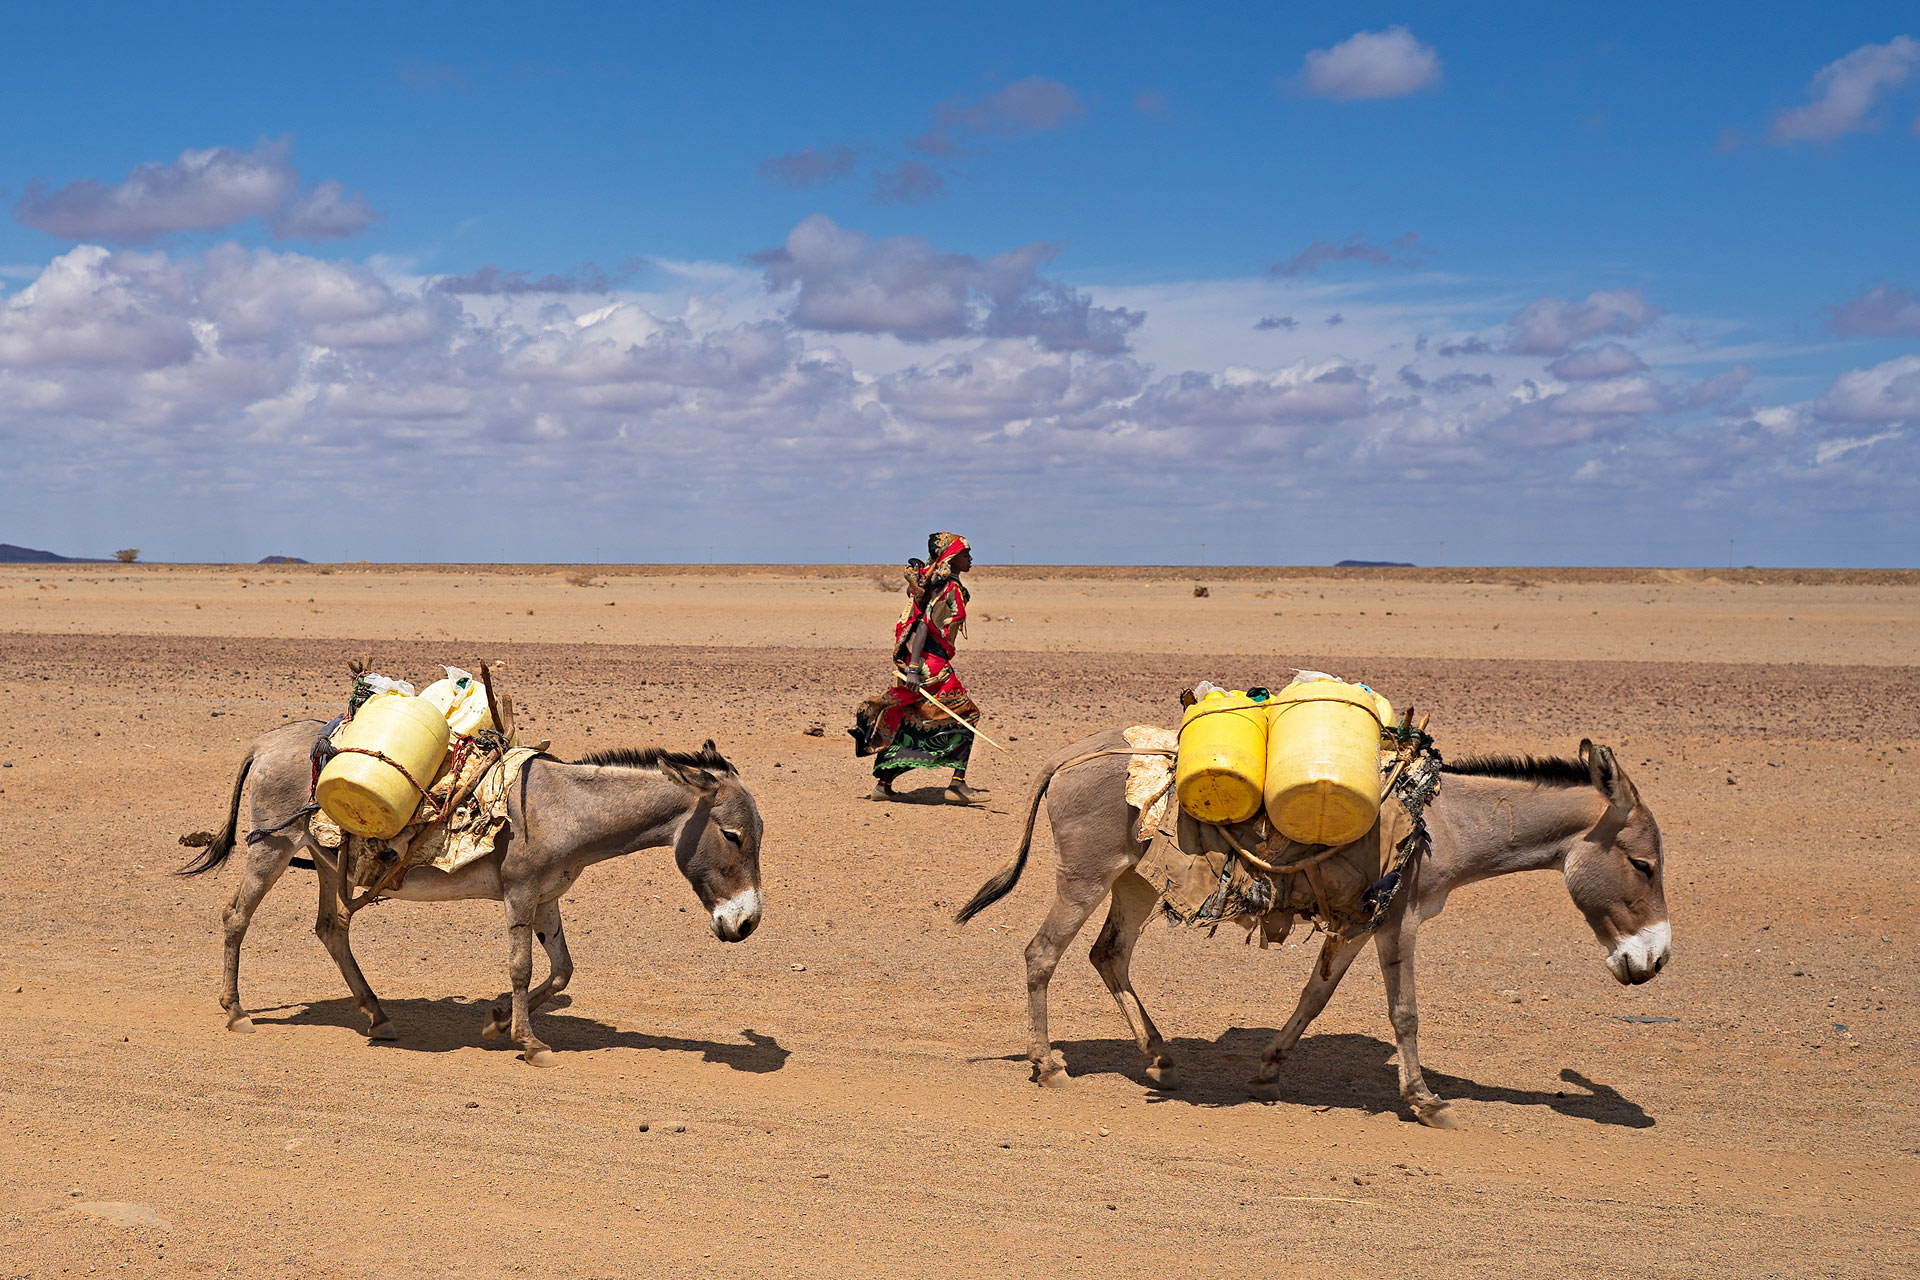 4. En kenyansk kvinna vandrar genom öknen med två åsnor lastade med vatten i gula kanistrar.